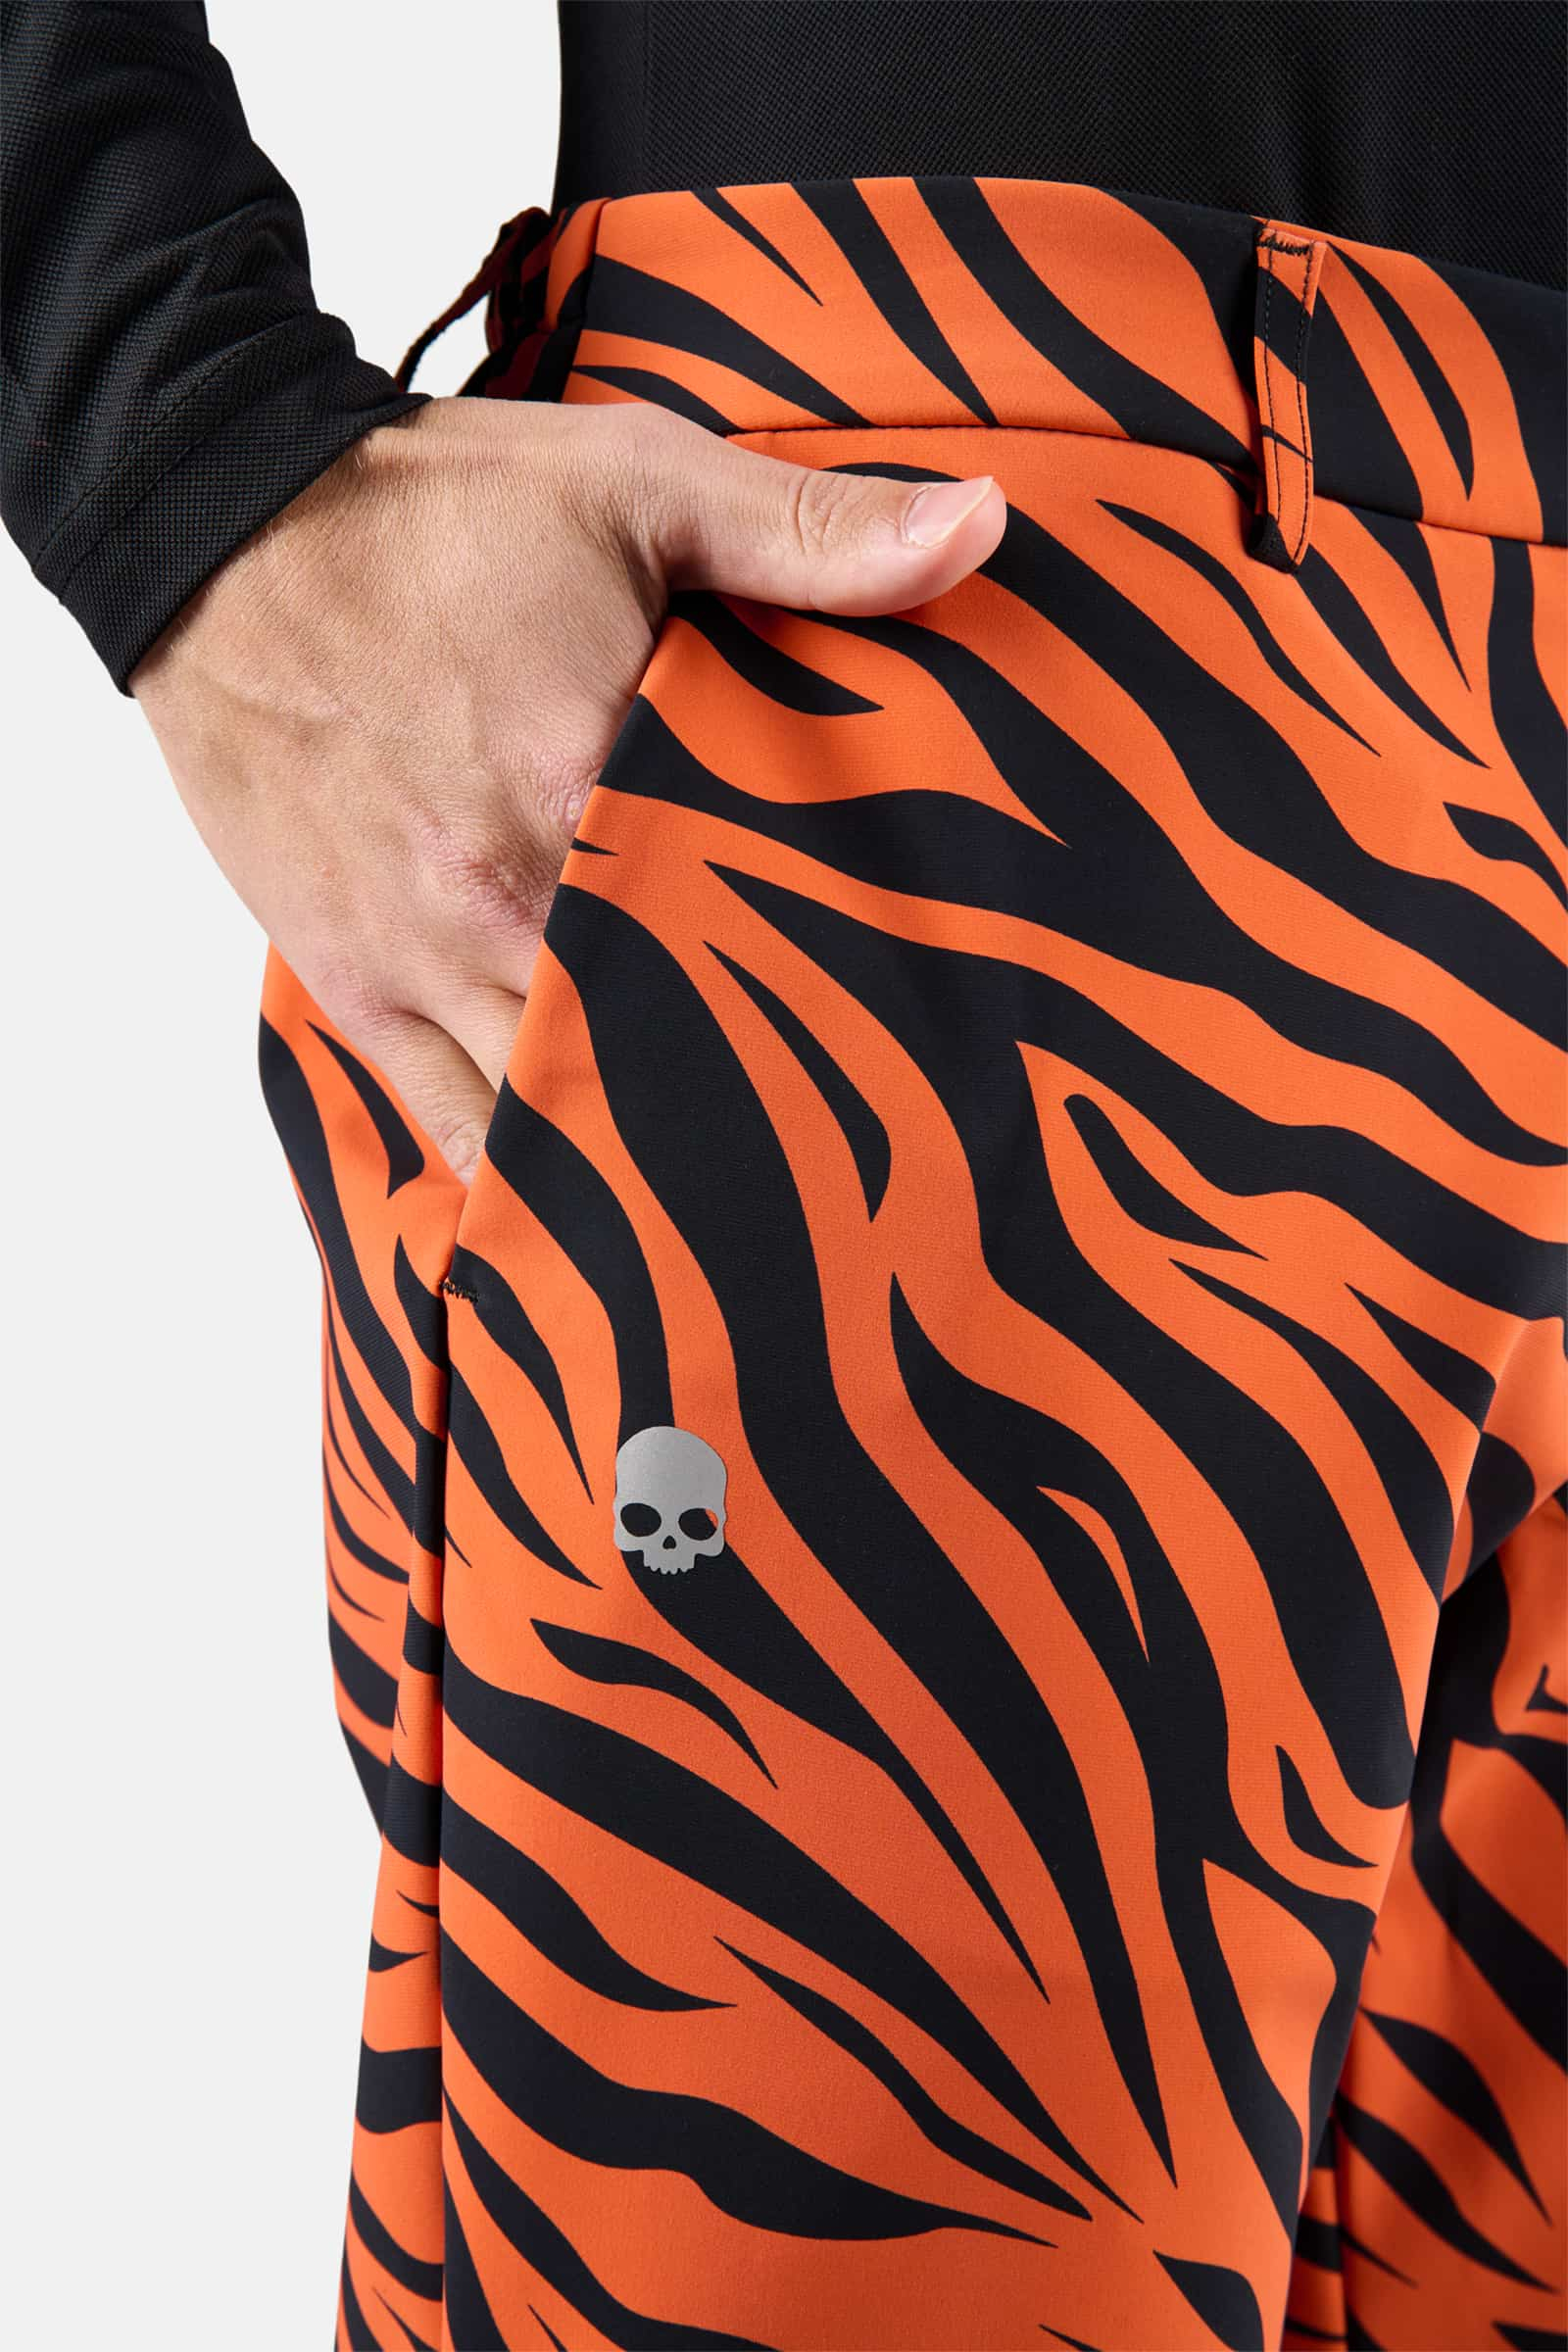 Pantaloni invernali da golf - ORANGE TIGER - Abbigliamento sportivo | Hydrogen